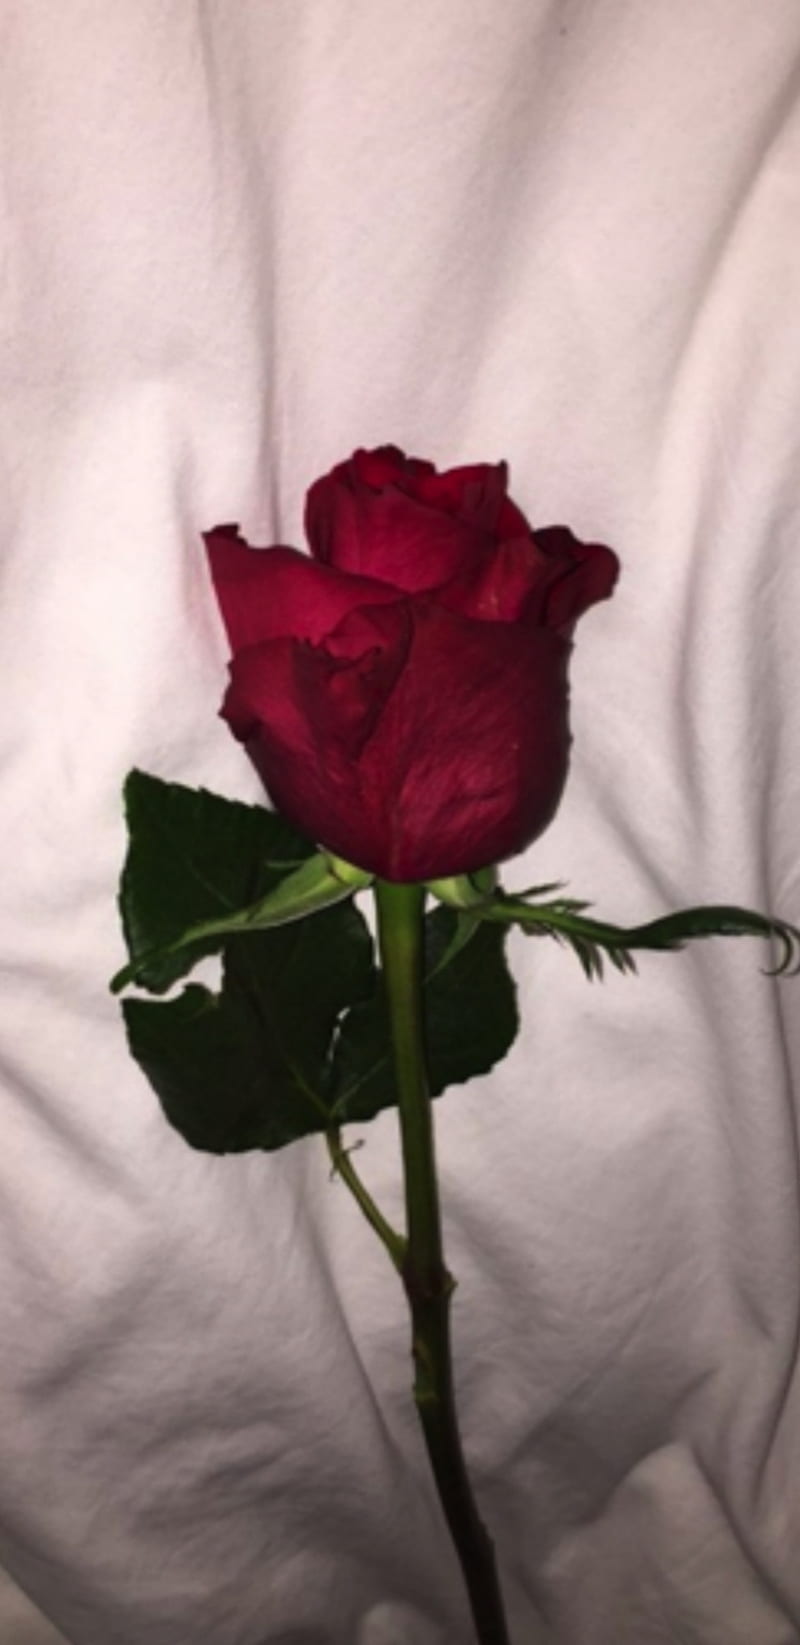 Rose Aesthetic, flower, flowers, love, red, roses, sheet, vintage aesthetic, white, HD phone wallpaper